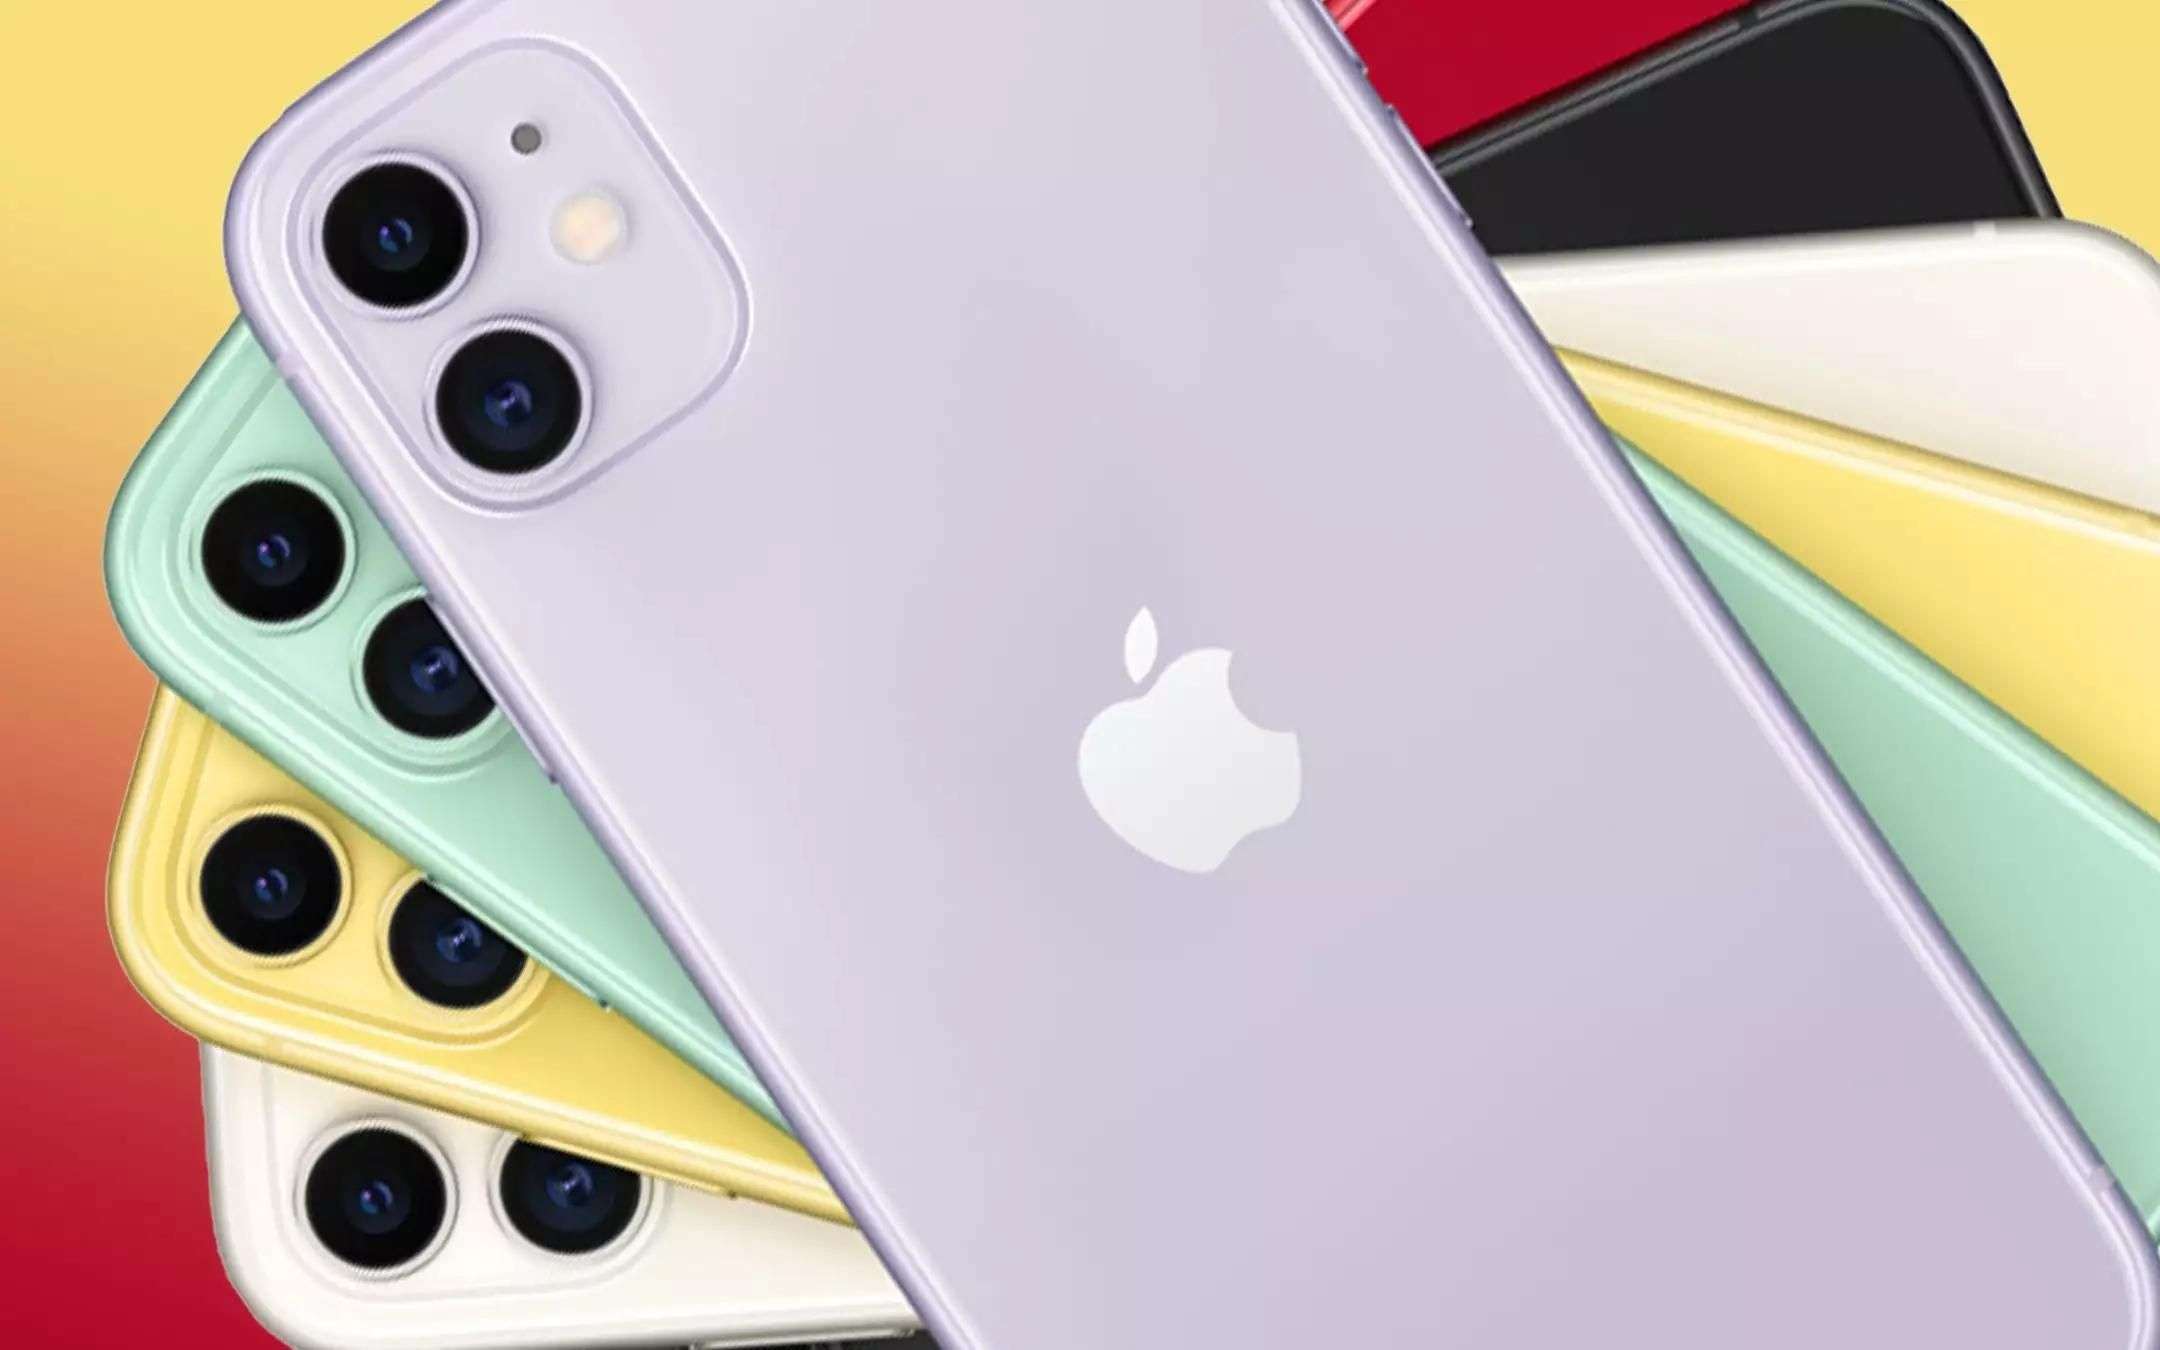 iPhone 11 ci siamo: quest'anno l'addio ufficiale?